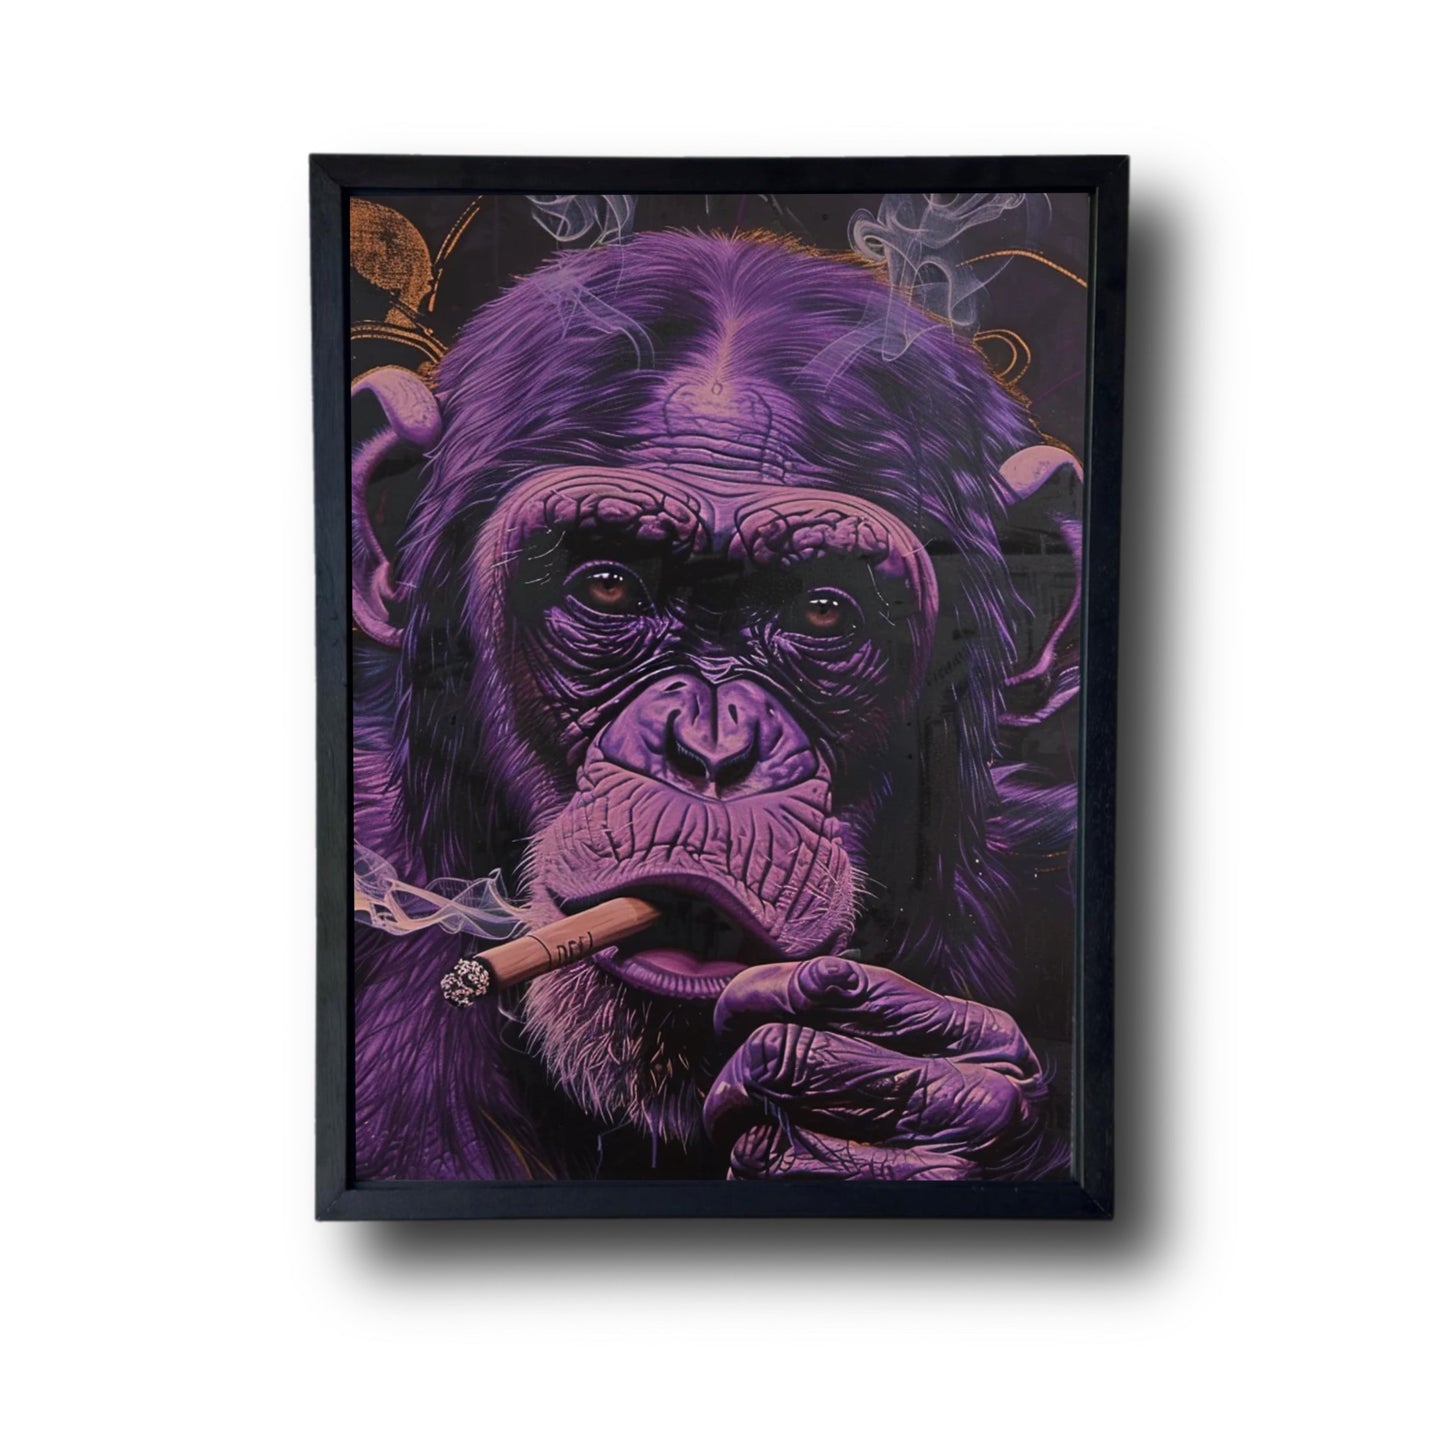 Purple Ape painted